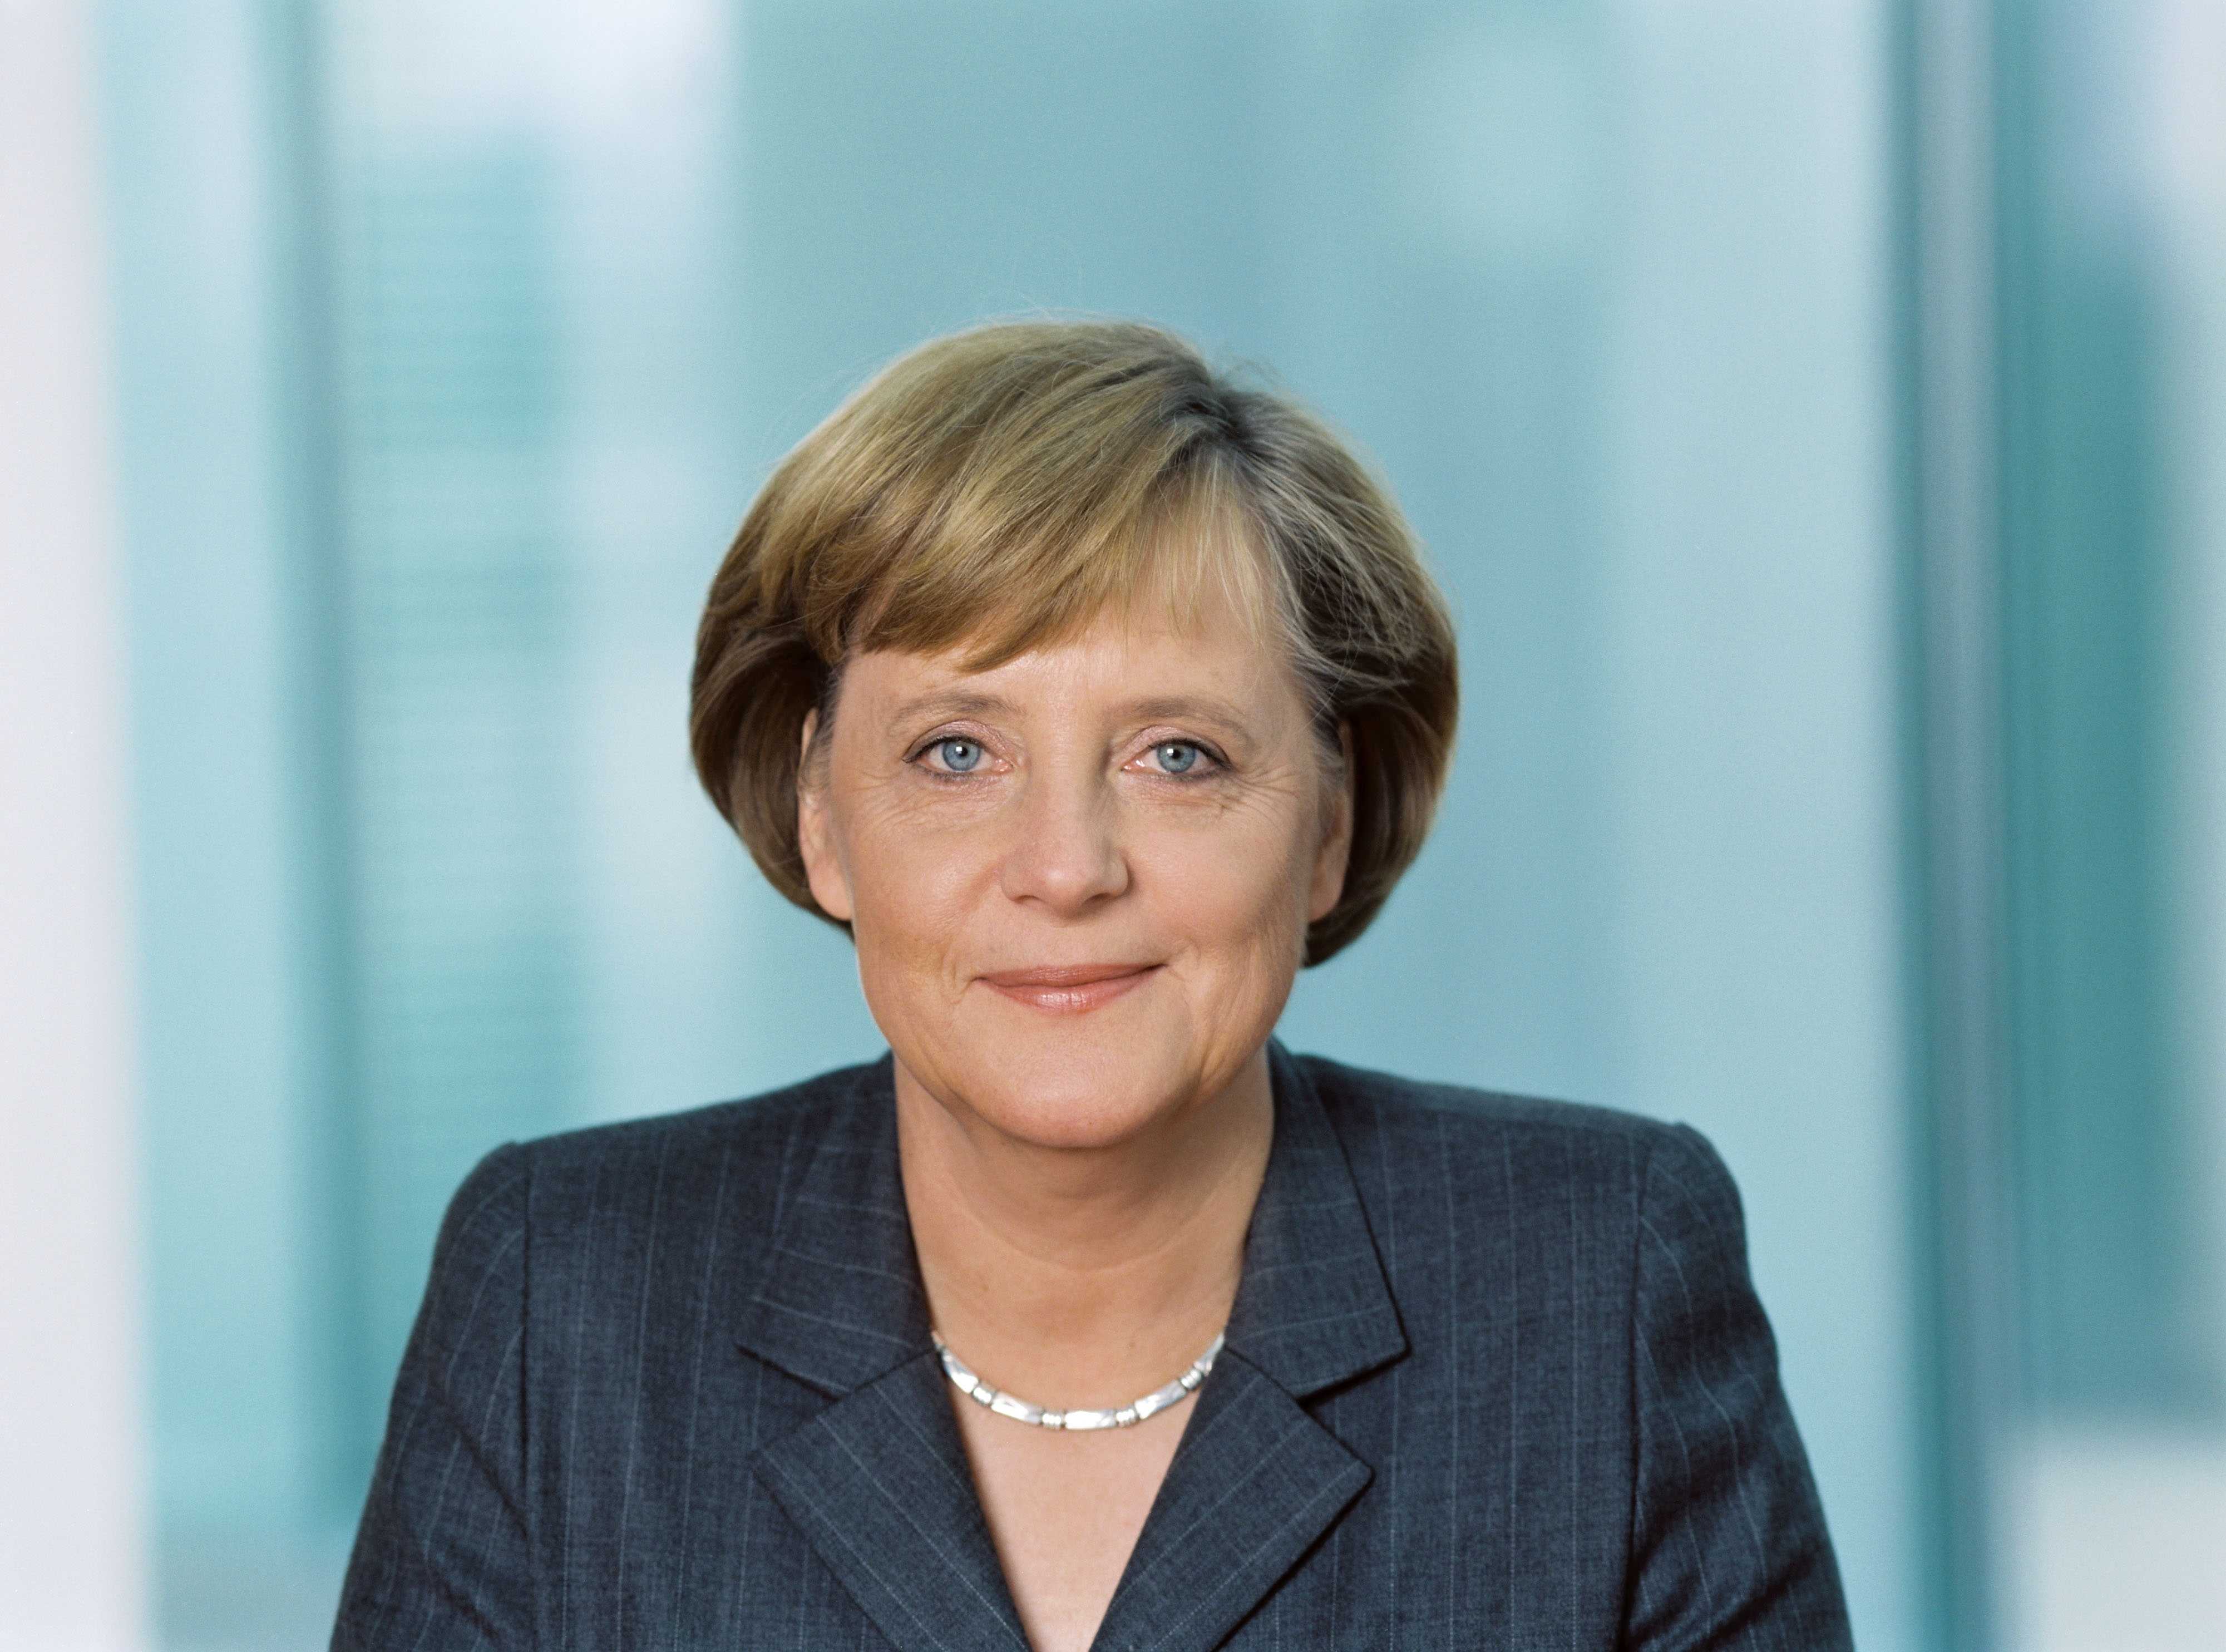 Ангела меркель: фото, краткая биография, личная жизнь, дети